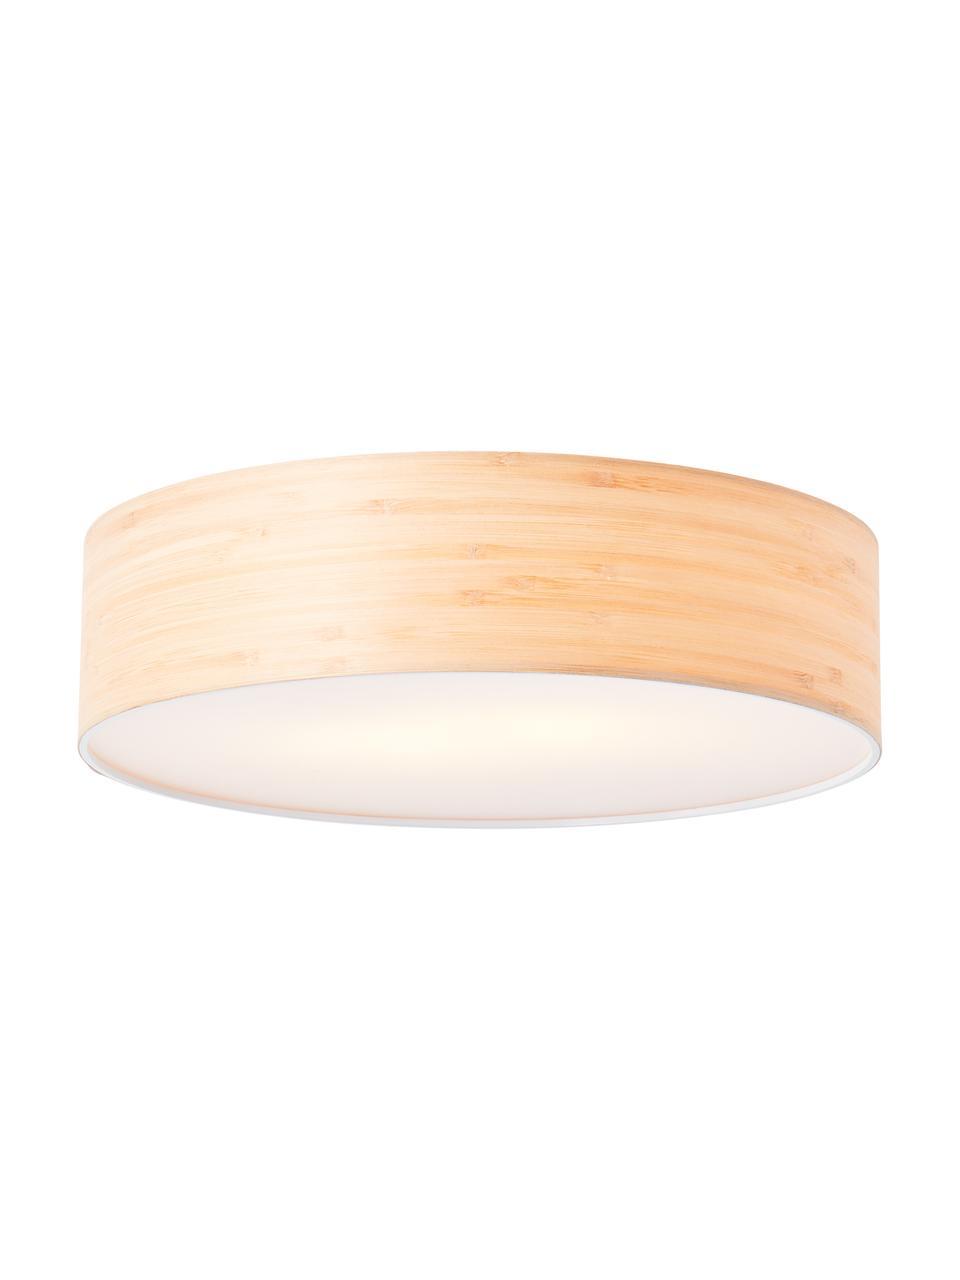 Lampa sufitowa z drewna w stylu scandi Romm, jasne drewno/biały, Ø 38 x W 10 cm